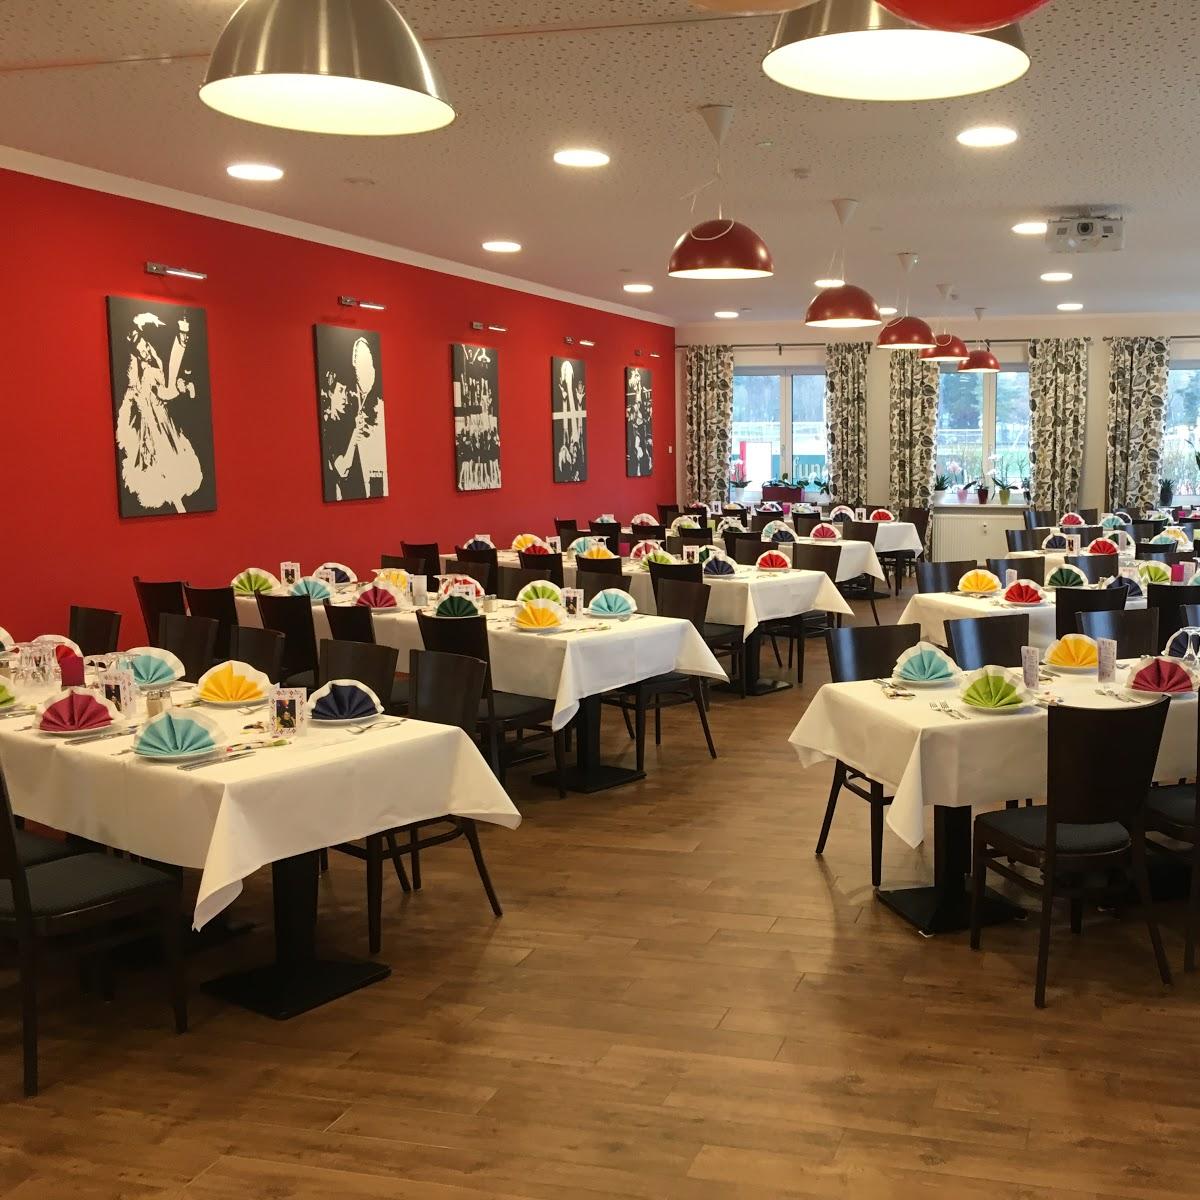 Restaurant "Restaurant TuS" in Griesheim